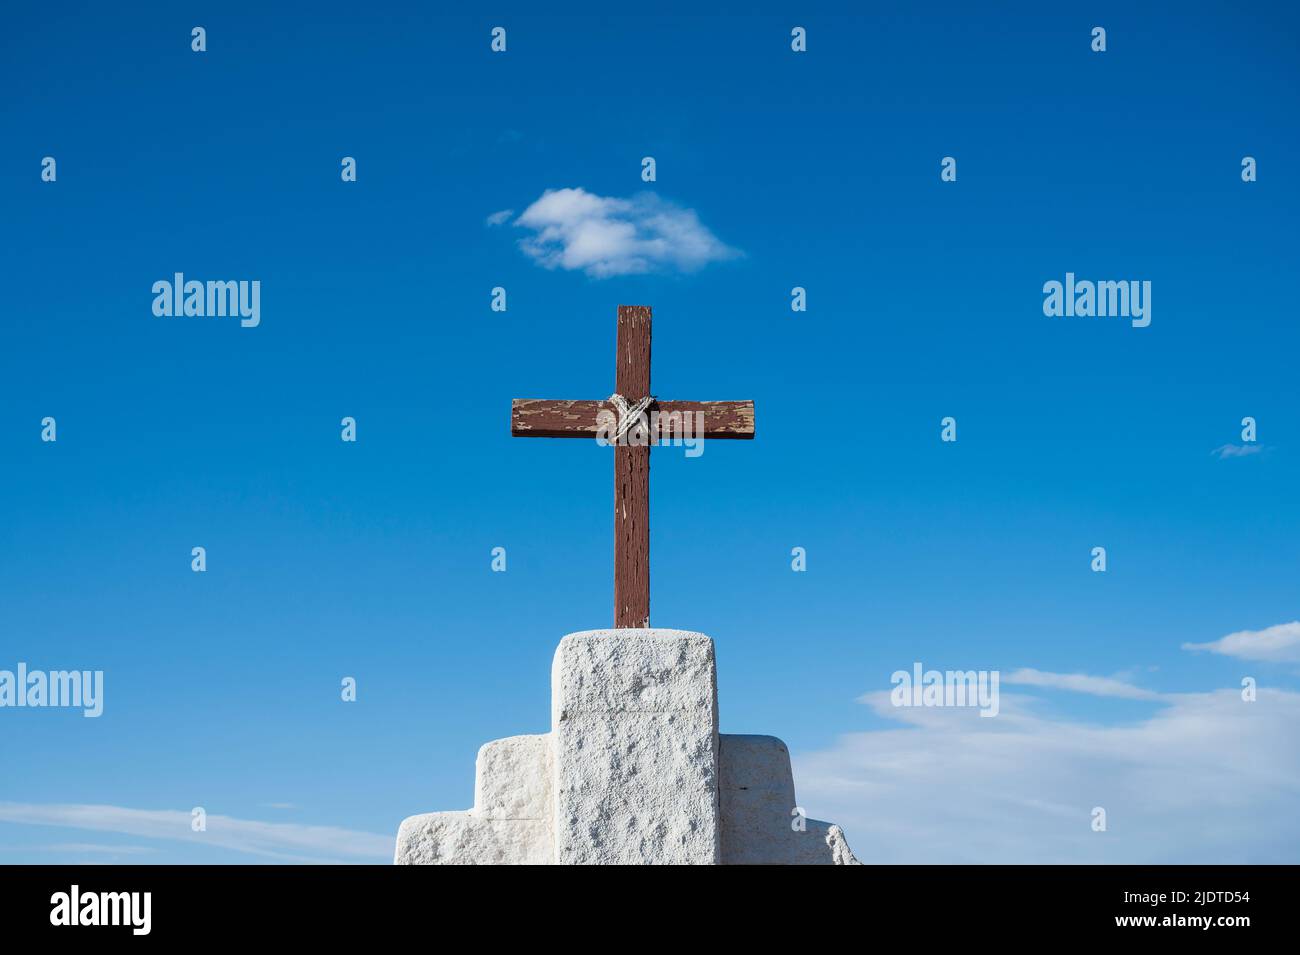 USA, Nouveau-Mexique, Golden, simple croix de bois contre le ciel Banque D'Images